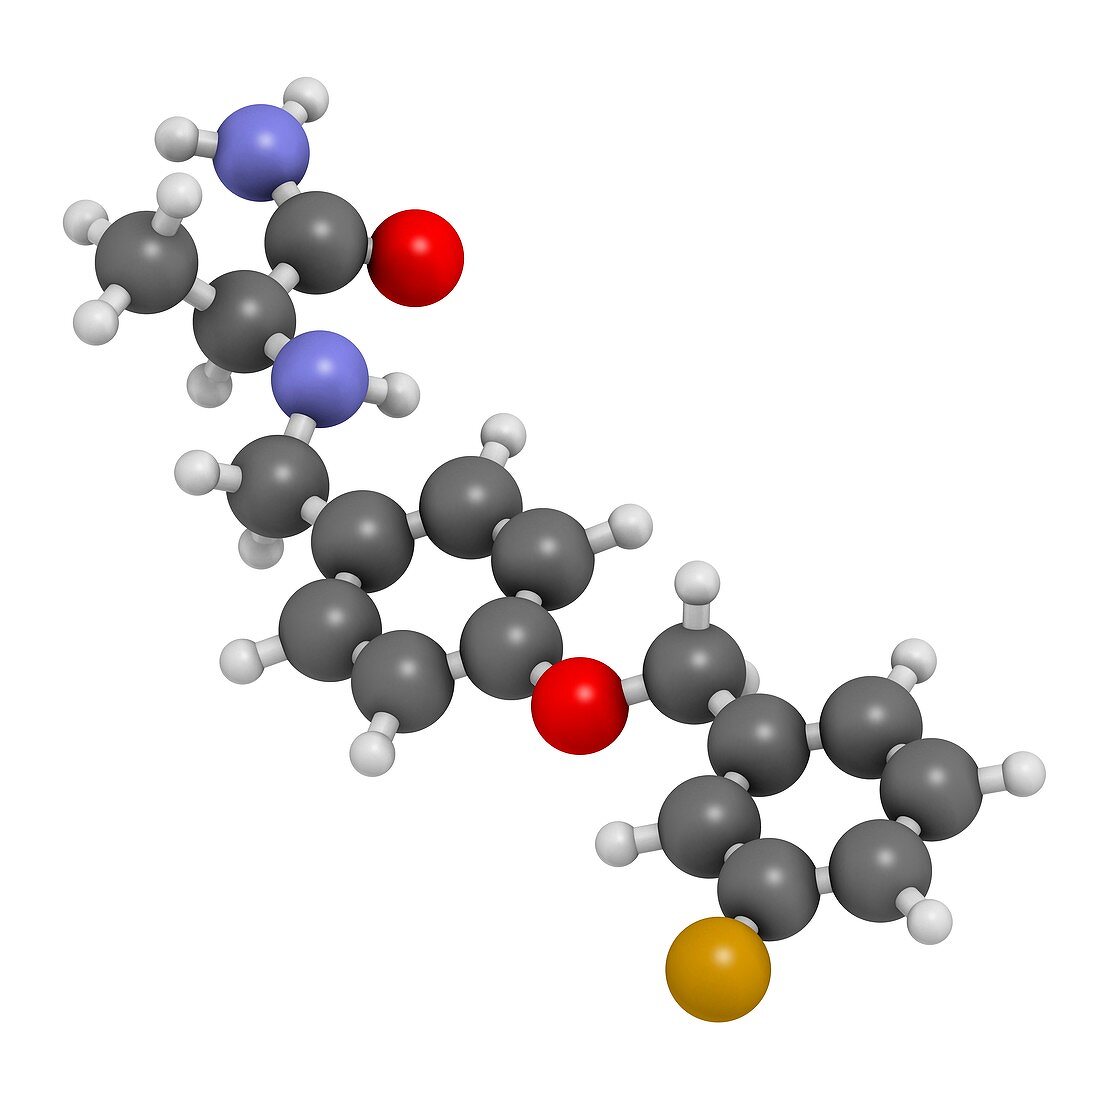 Safinamide Parkinson's disease drug